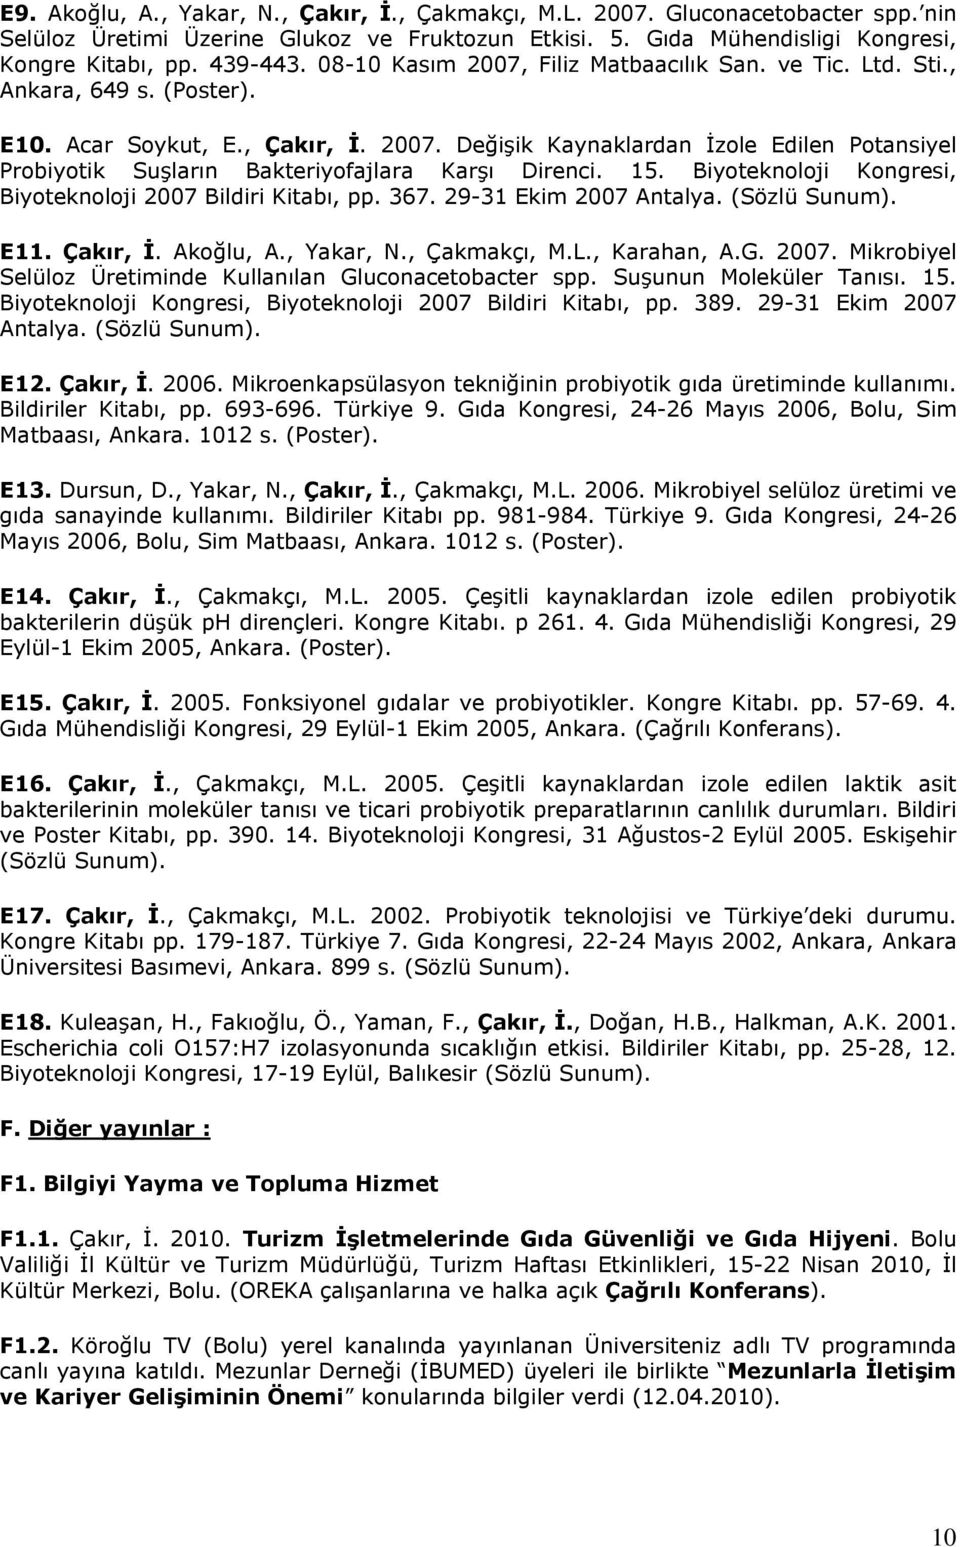 15. Biyoteknoloji Kongresi, Biyoteknoloji 2007 Bildiri Kitabı, pp. 367. 29-31 Ekim 2007 Antalya. (Sözlü Sunum). E11. Çakır, İ. Akoğlu, A., Yakar, N., Çakmakçı, M.L., Karahan, A.G. 2007. Mikrobiyel Selüloz Üretiminde Kullanılan Gluconacetobacter spp.